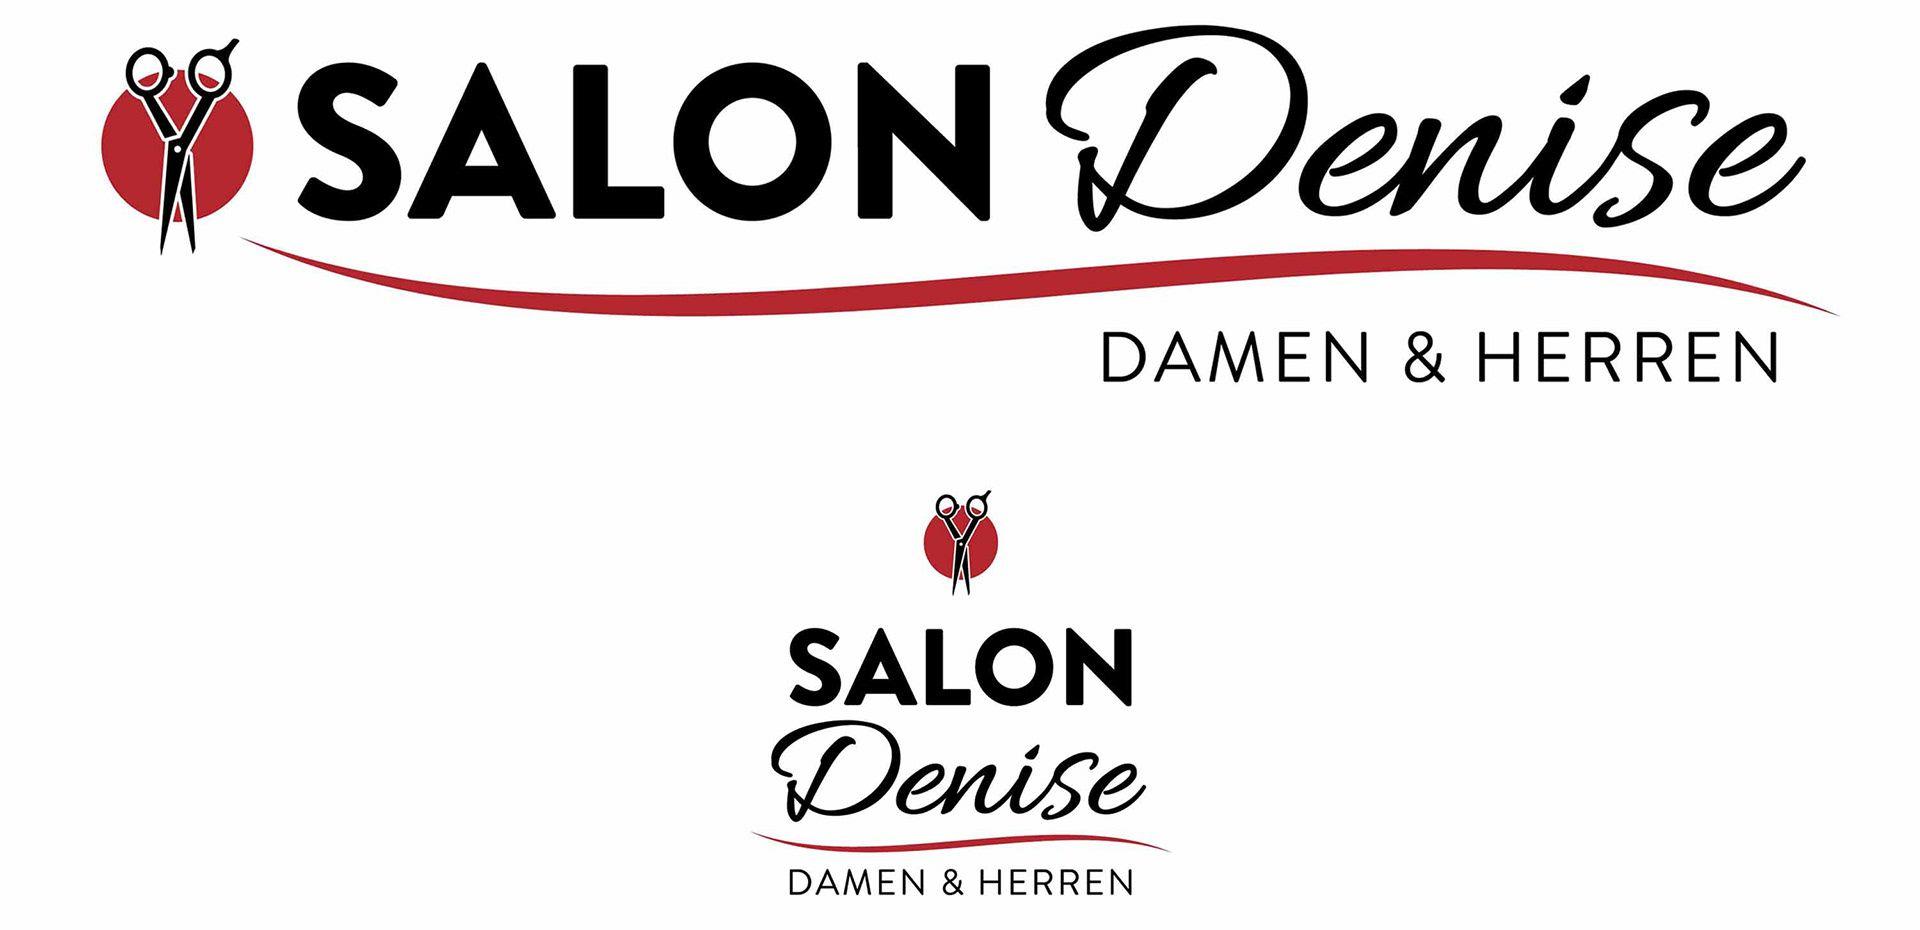 Denise Logo - BAD TASTE Design - Salon Denise - Logo Design, Layout & Lettering